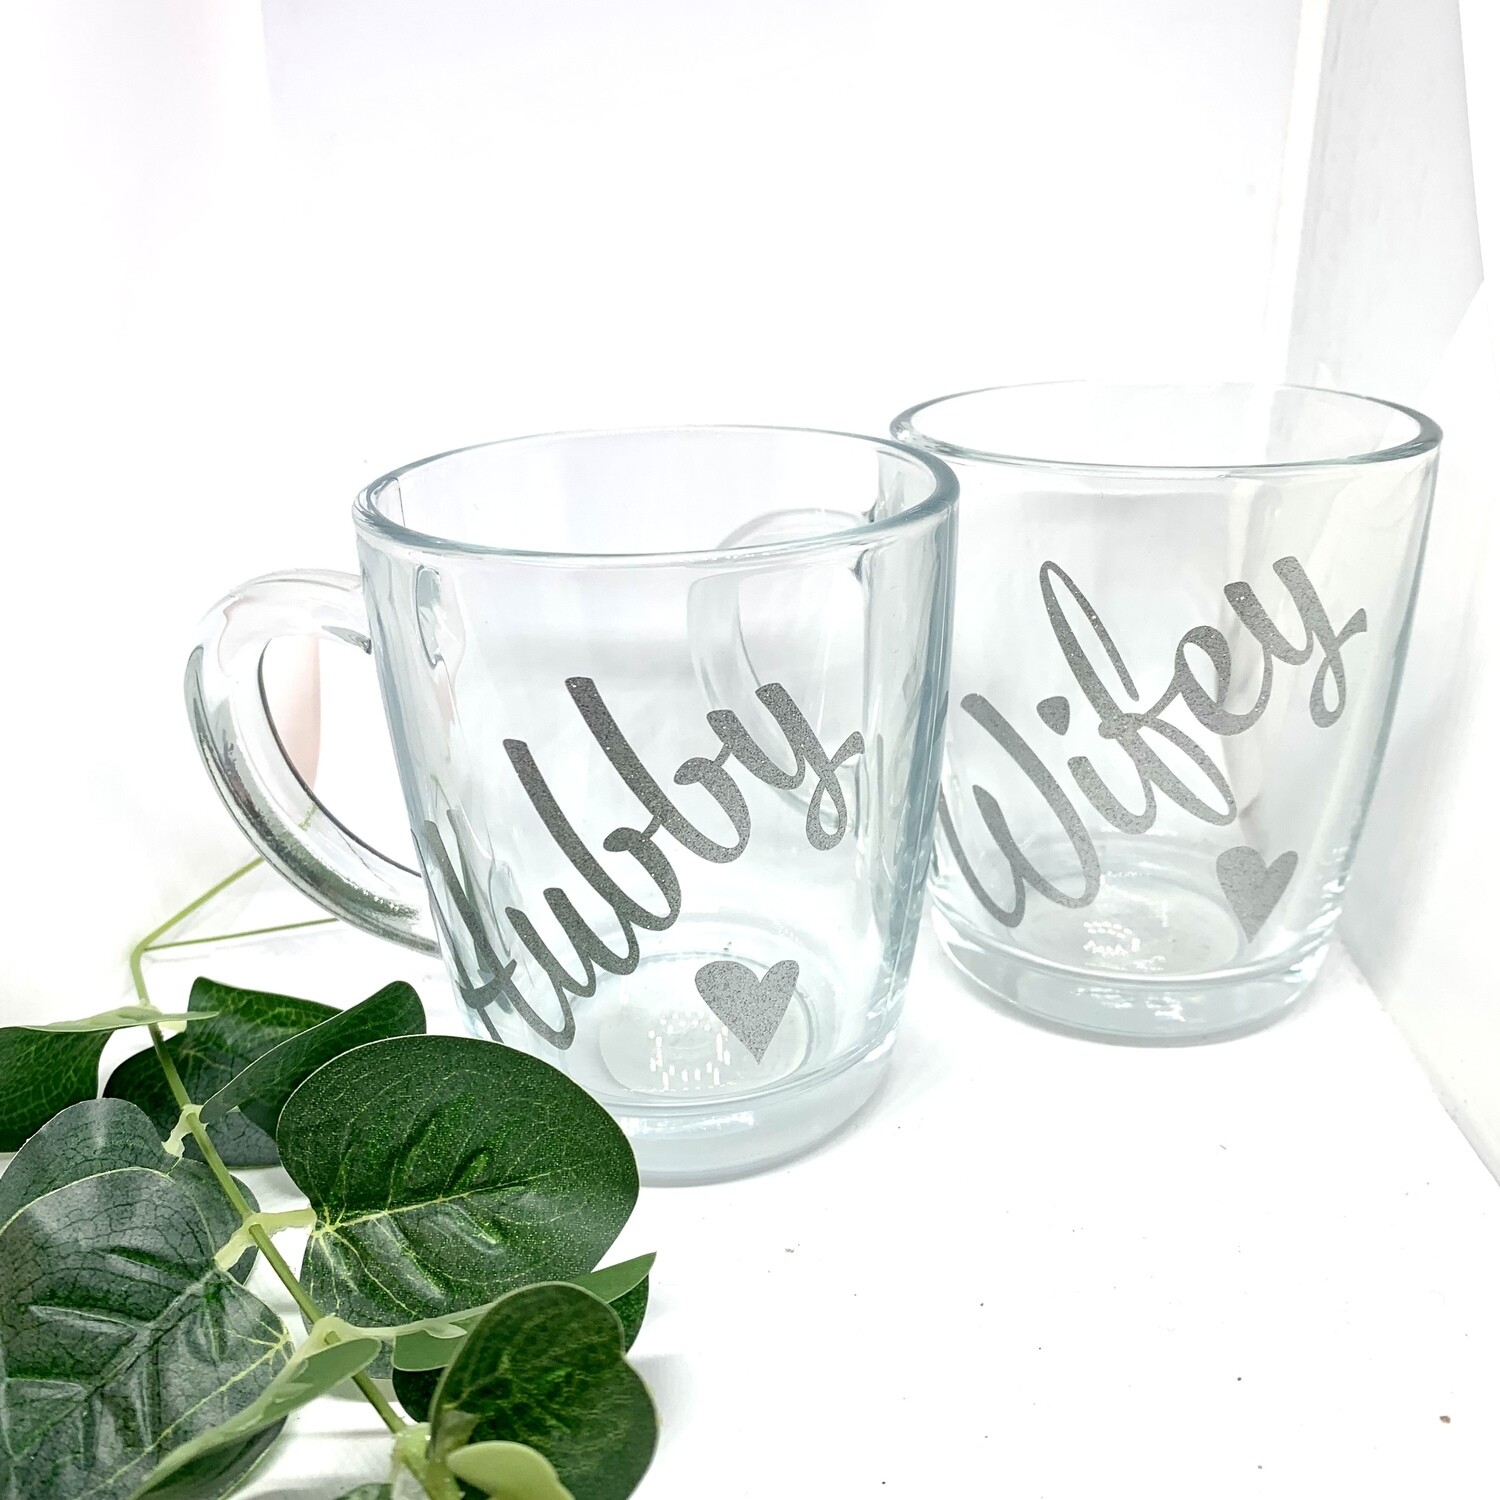 Hubby & Wifey mugs